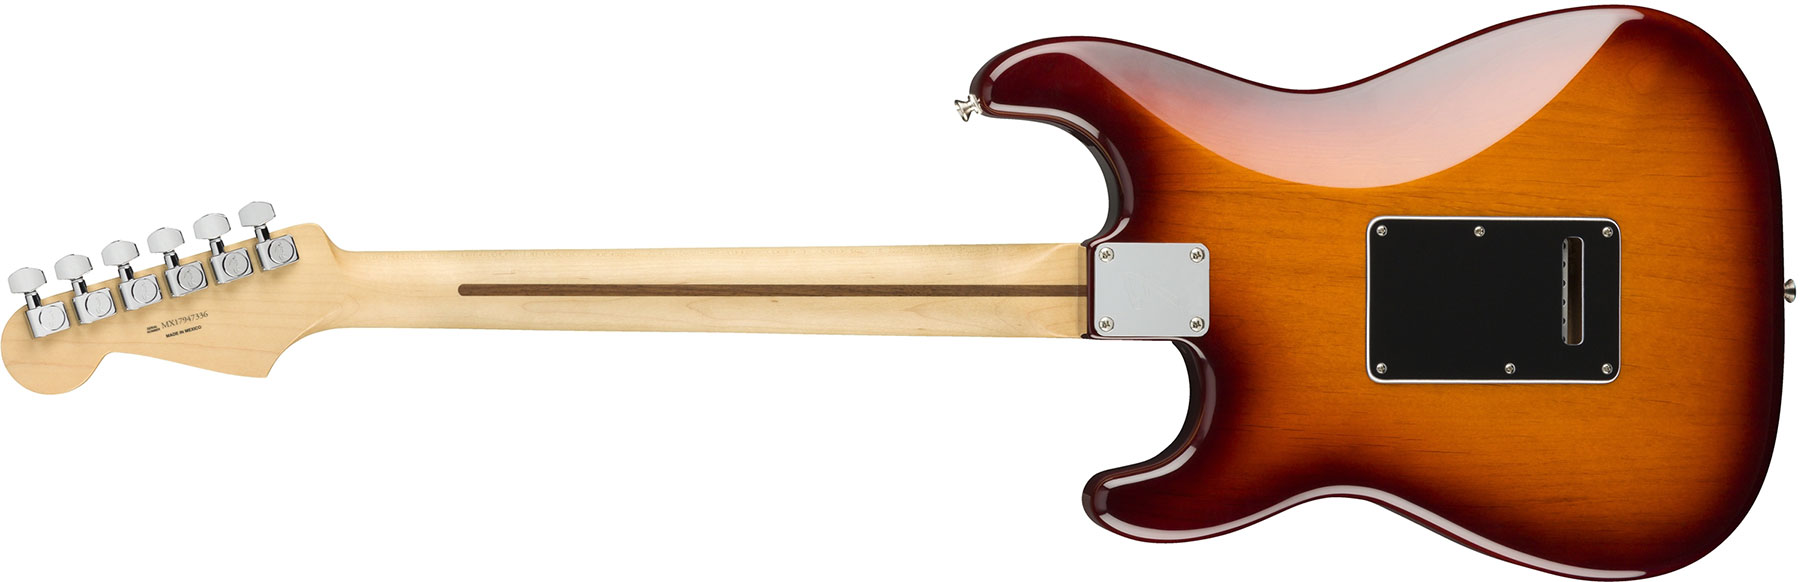 Fender Strat Player Plus Top Mex Hss Pf - Tobacco Burst - Guitare Électrique Forme Str - Variation 1